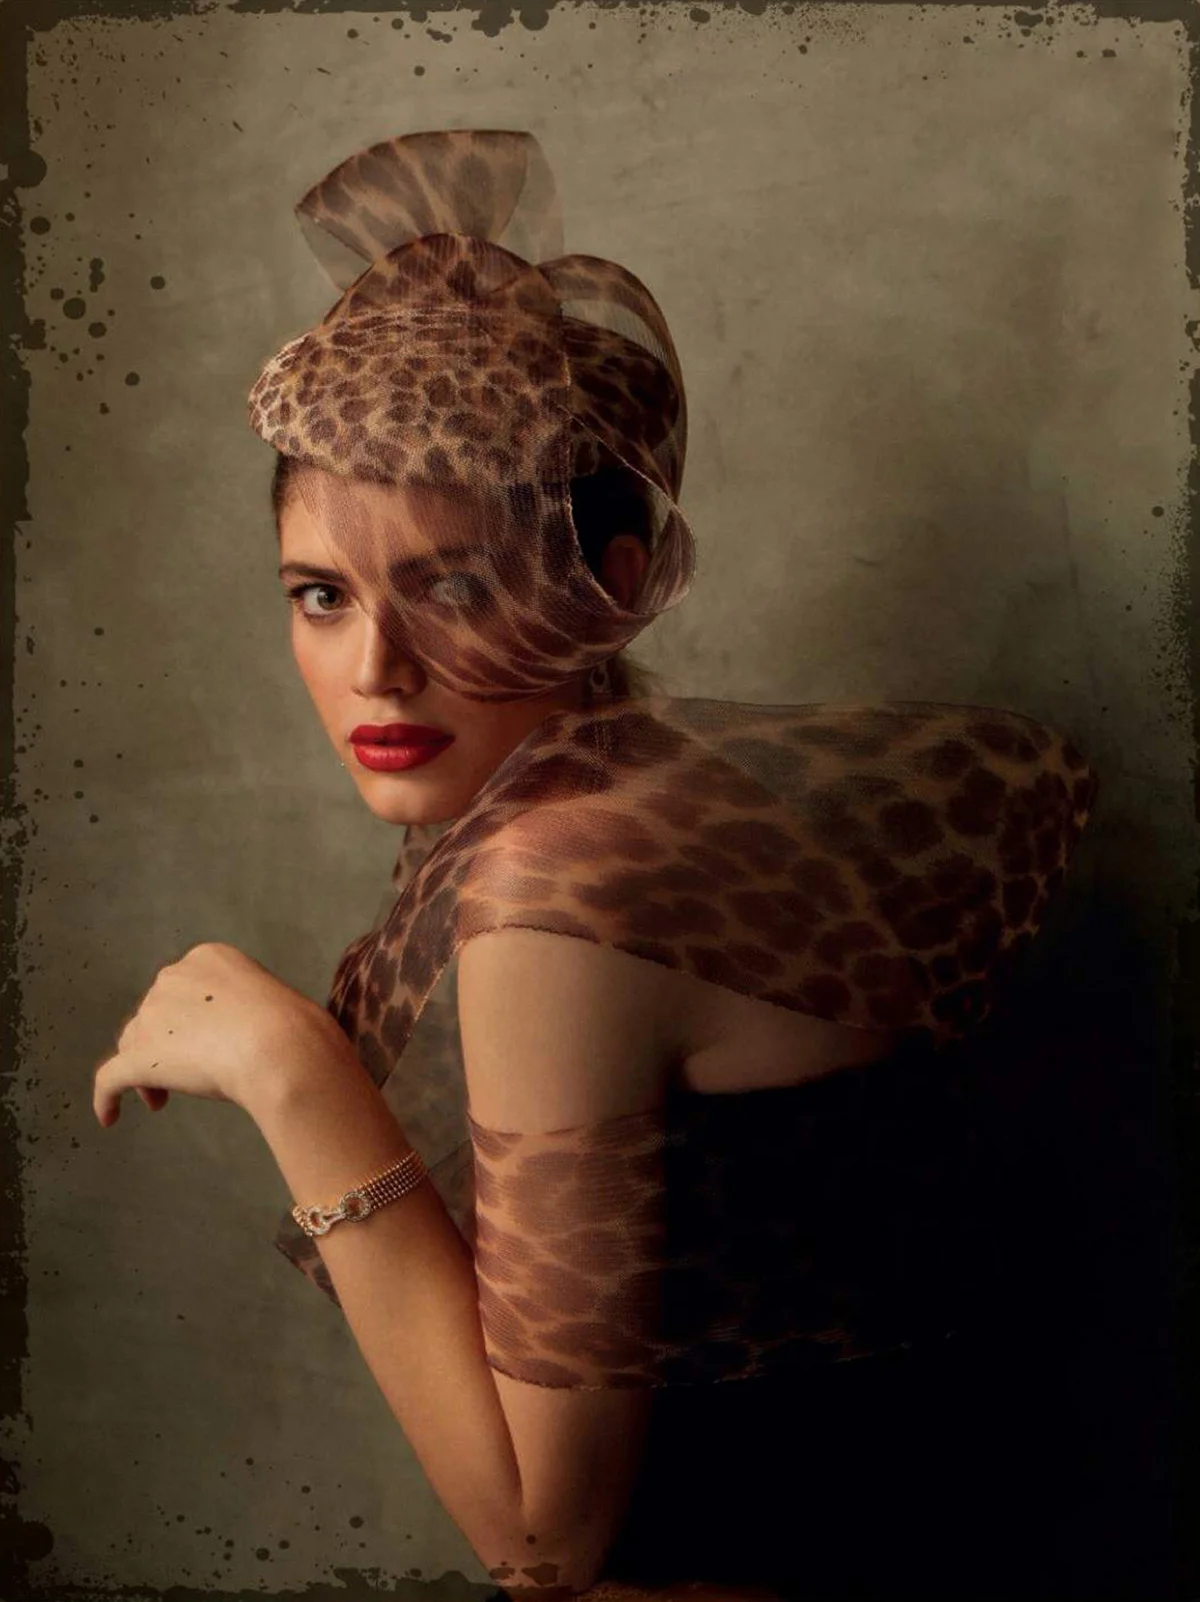 Valentina Sampaio covers Harper’s Bazaar Spain April 2022 by Rocio Ramos